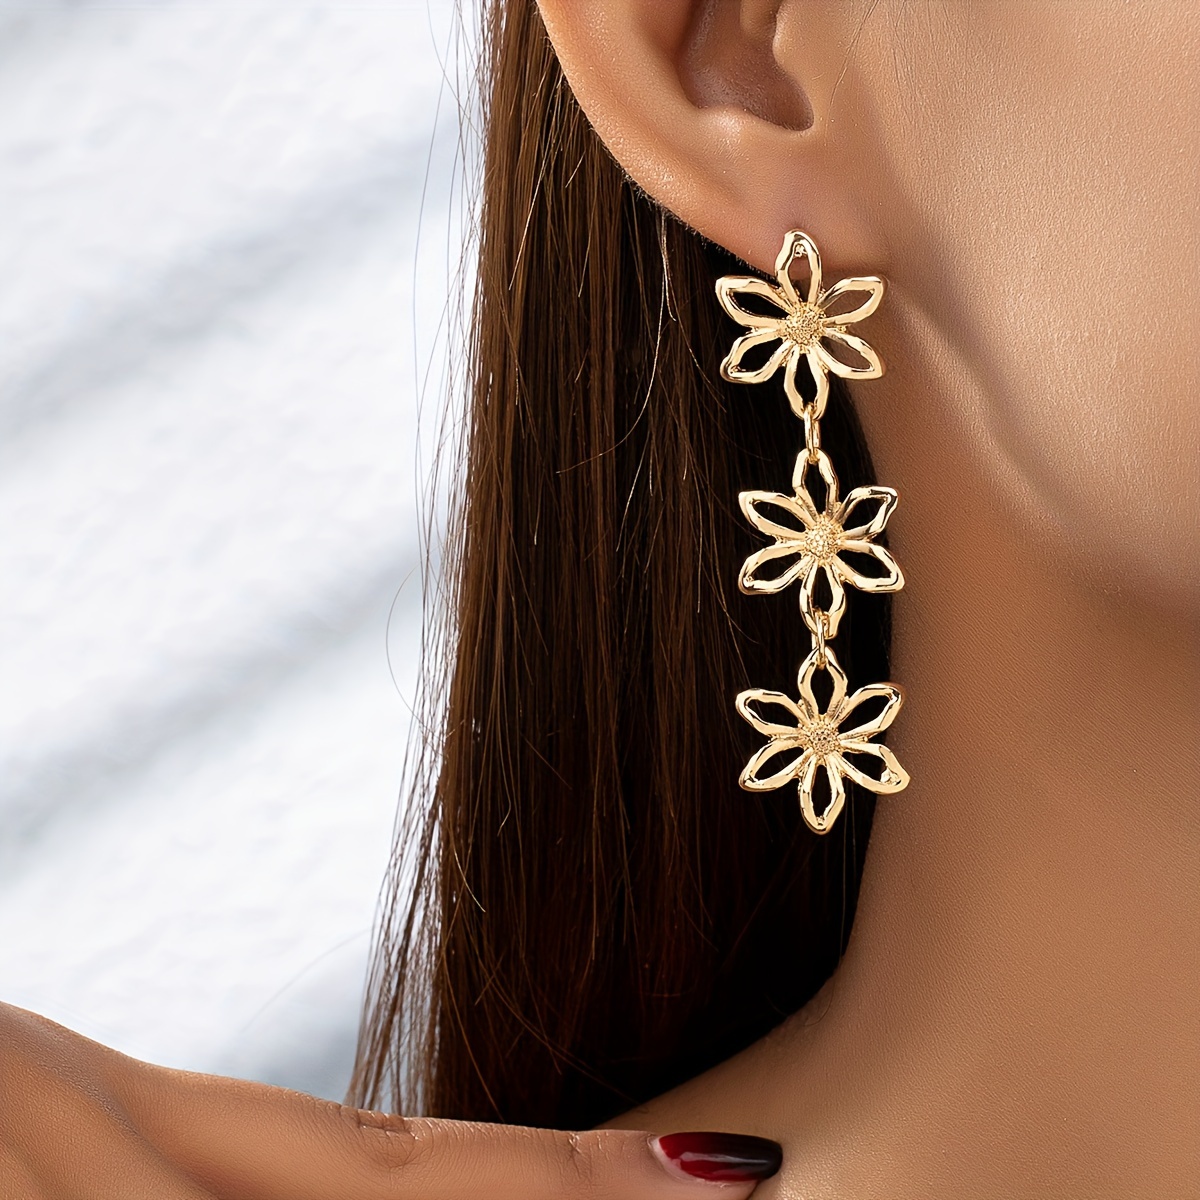 

Golden Hollow Flower Design Long Dangle Earrings Boho Vacation Style Zinc Alloy Jewelry Delicate Female Earrings